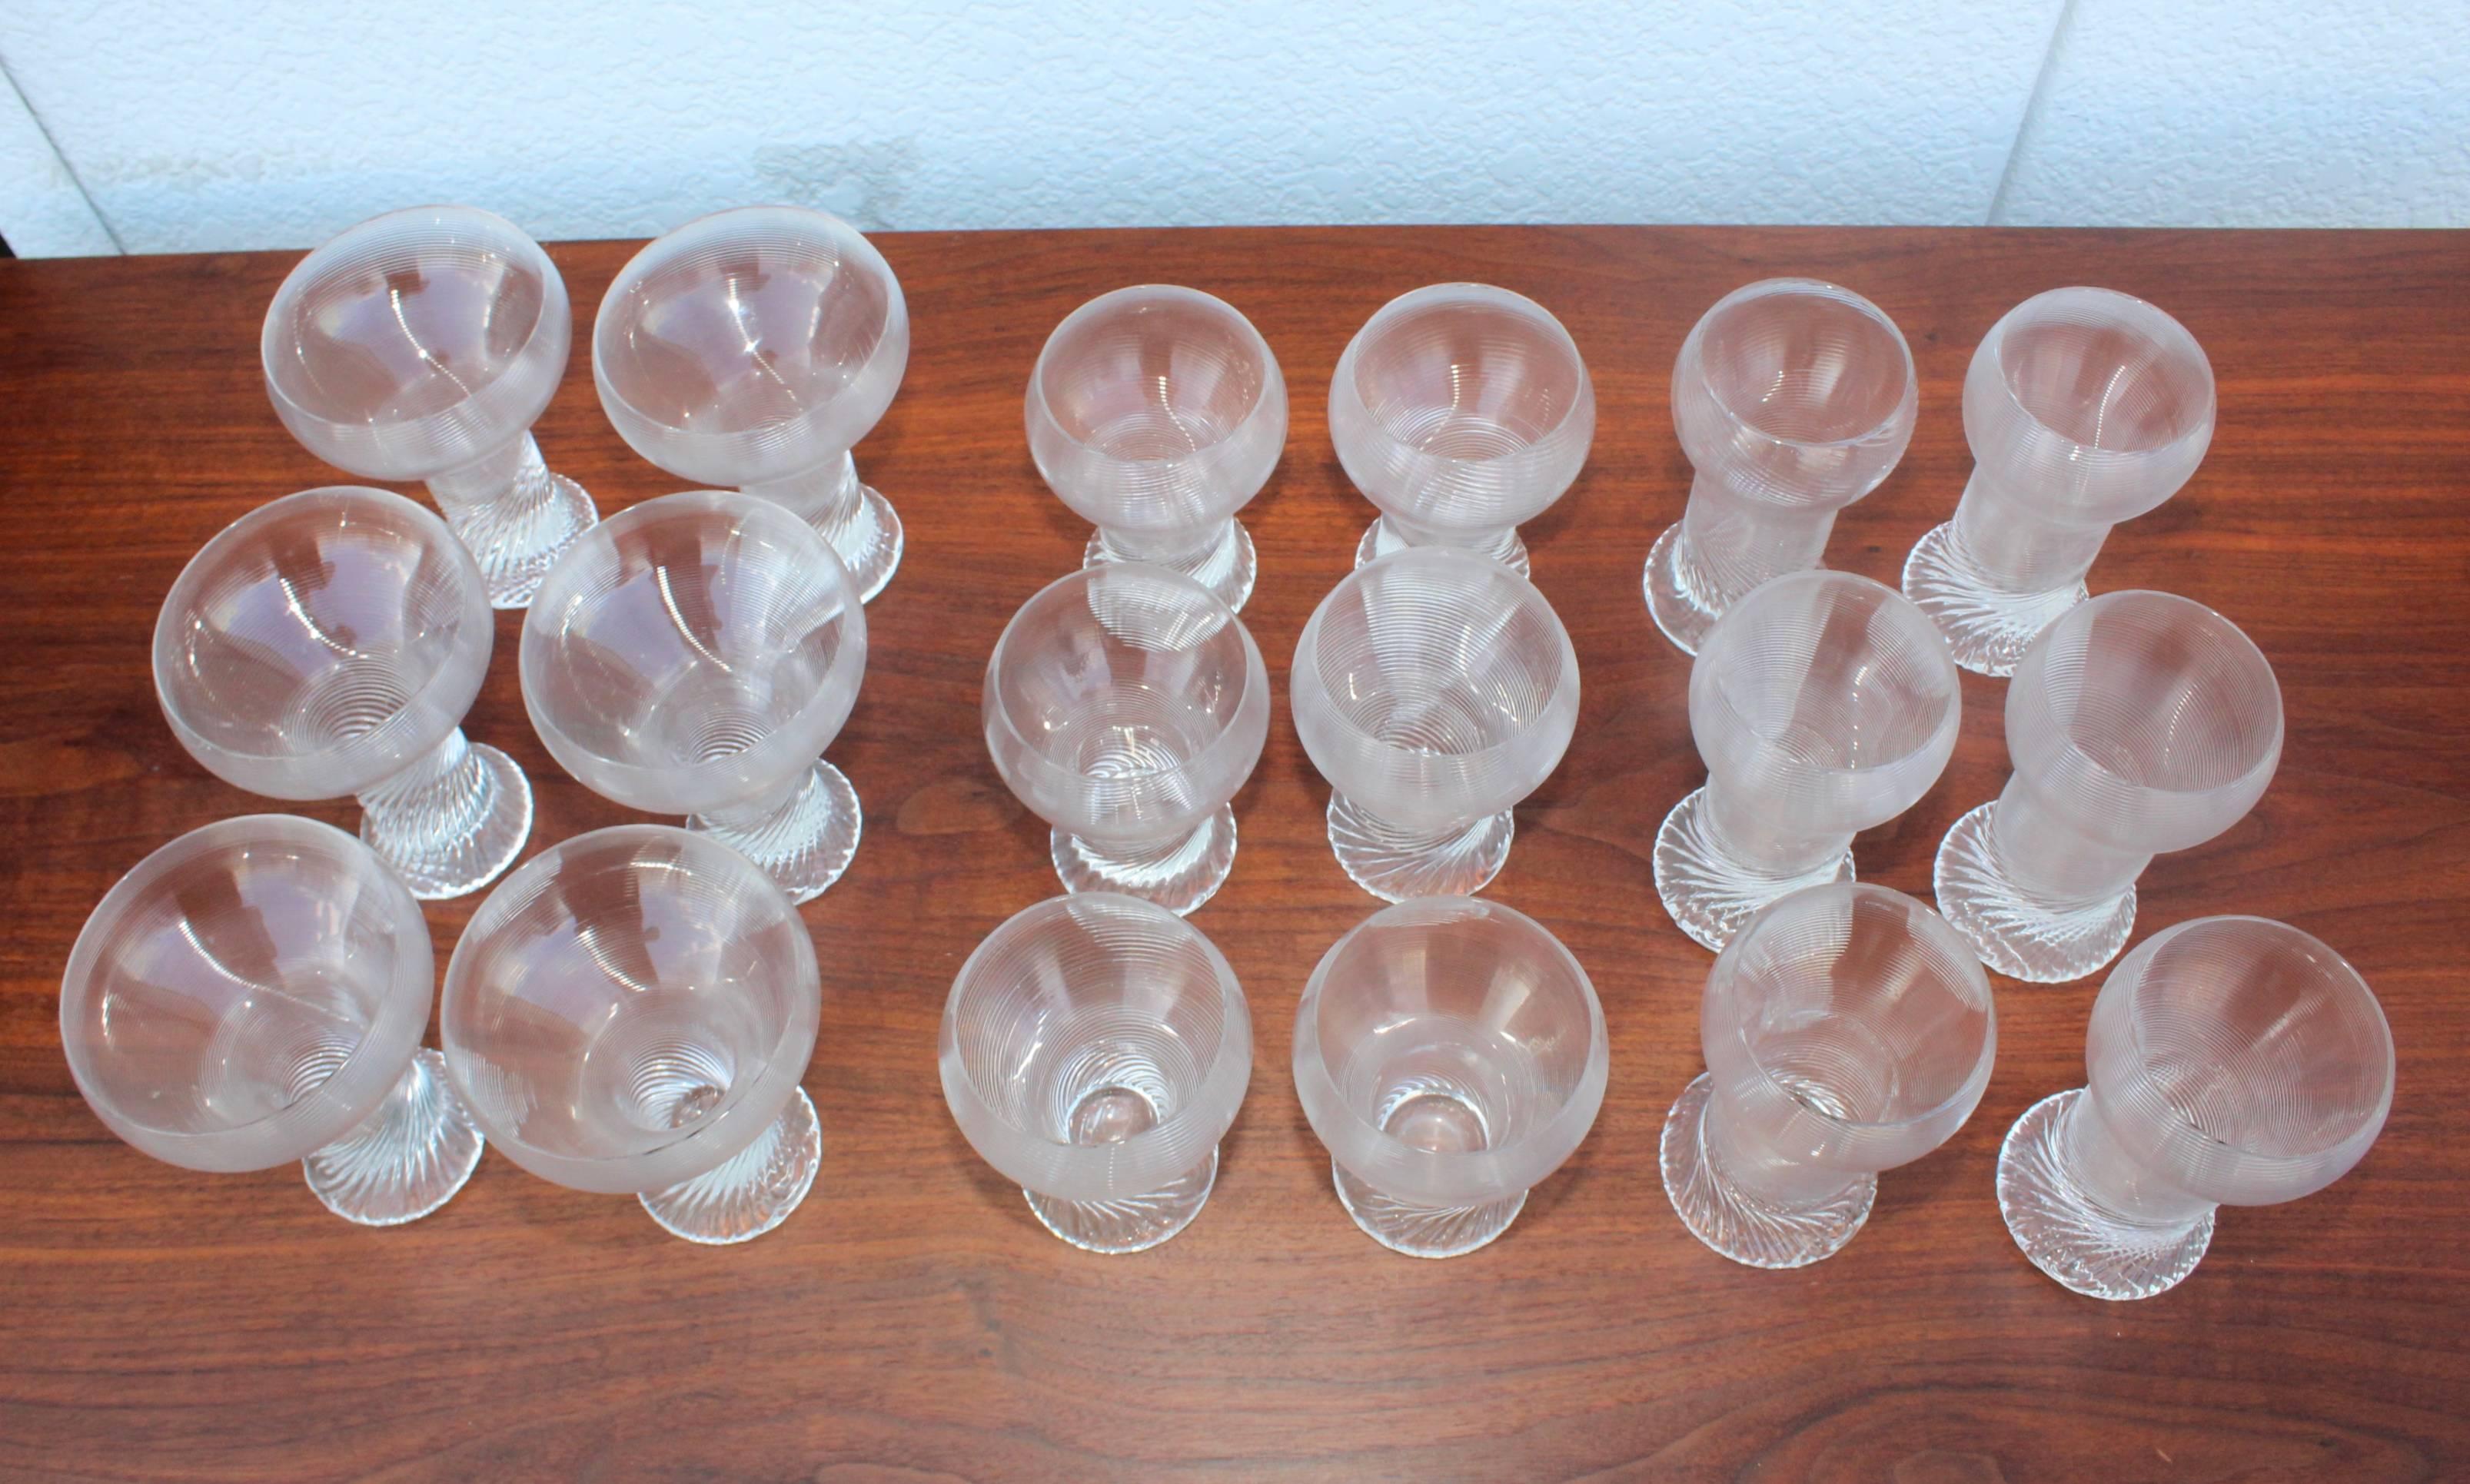 1970s modern swirl set of 18 glasses by Rosenthal Studio.

Measure: medium glasses height 5.5 diameter 3.25
small glasses height 4.75, diameter 3.5.